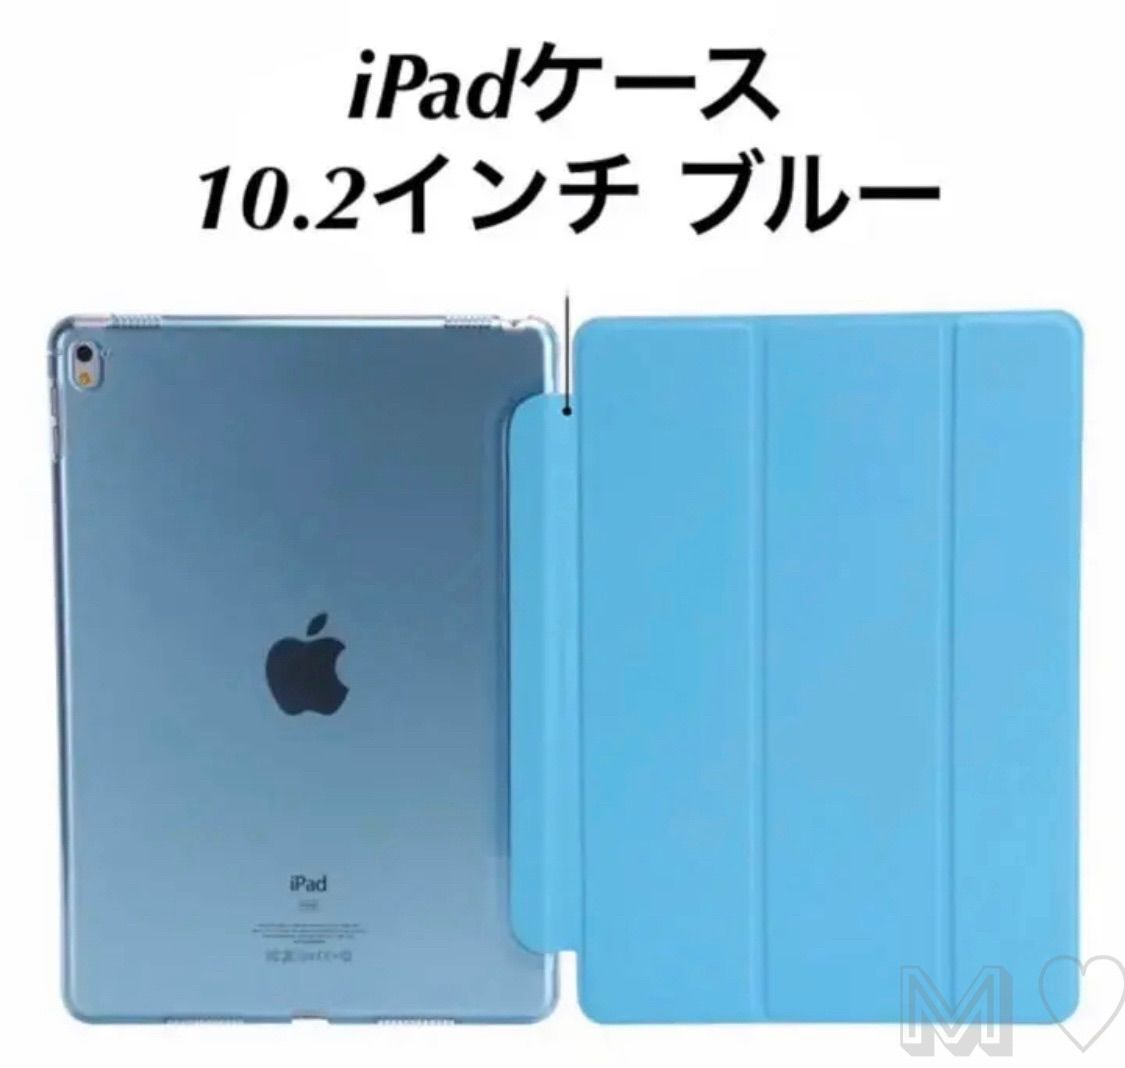 iPad 第7 9世代 ケース 10.2インチ  iPad Pro 9.7 10.5 10.2 10.9 11インチ iPadAir4 Air3 9.7 2021 2020 レザー iPad スタンド機能 360度 回転 アイパットミニ iPad レザー 軽量 革 iPad ケース 2021 新 アイパッドオート スリープ  かわいい シンプル